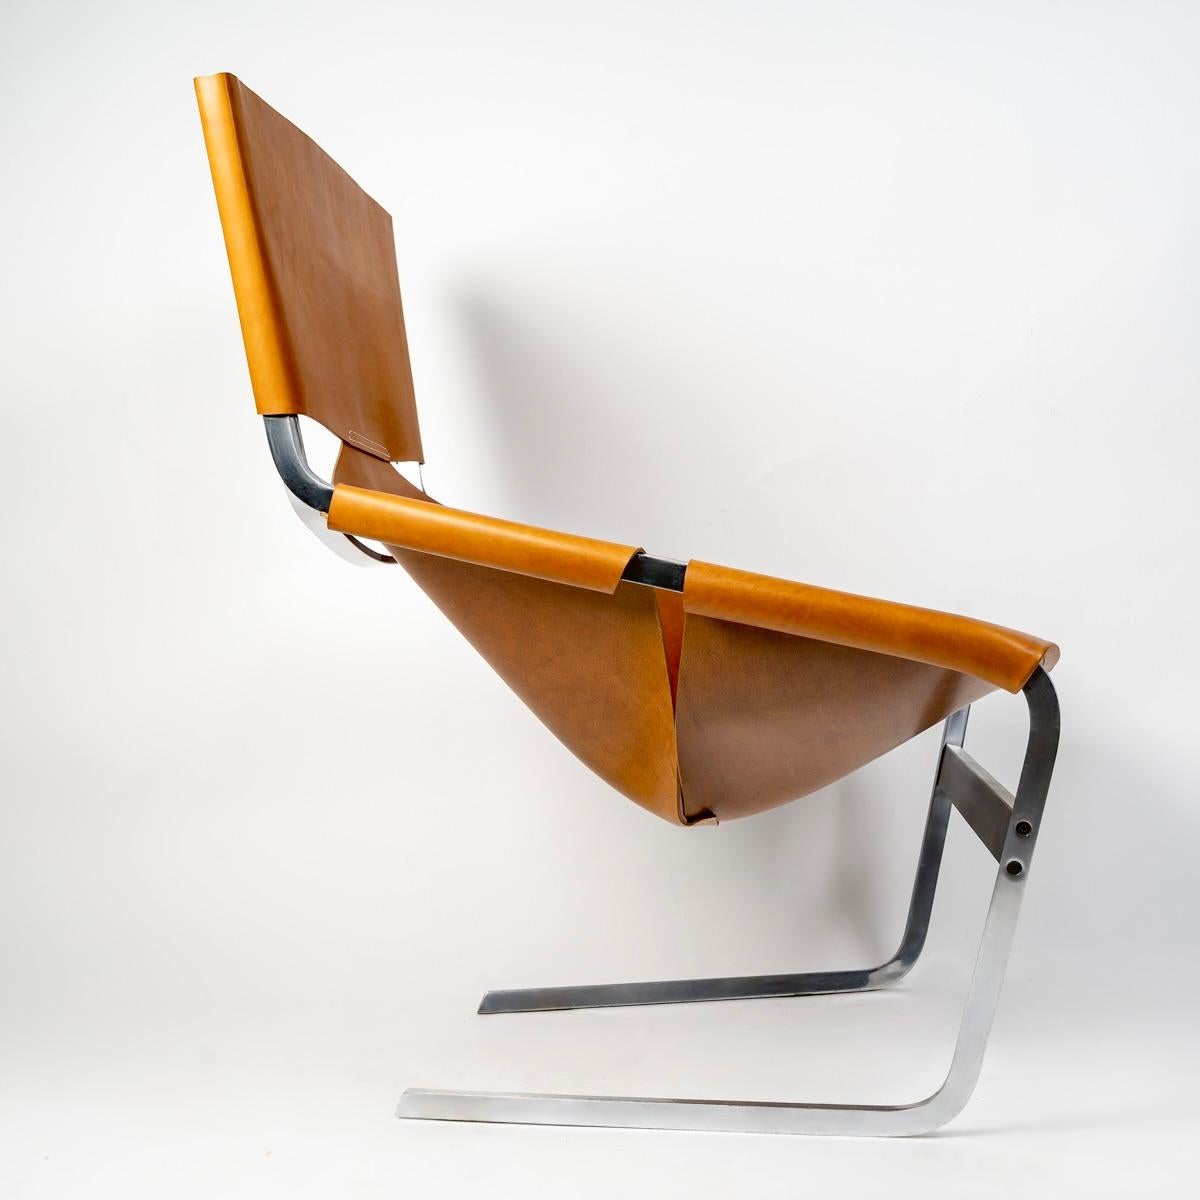 Paire originale de chaises longues modèle F444 conçues par Pierre Paulin et fabriquées par Artifort en 1963.
Les fauteuils présentent une solide armature en acier recouverte d'un magnifique cuir couleur cognac (la housse a été refaite à